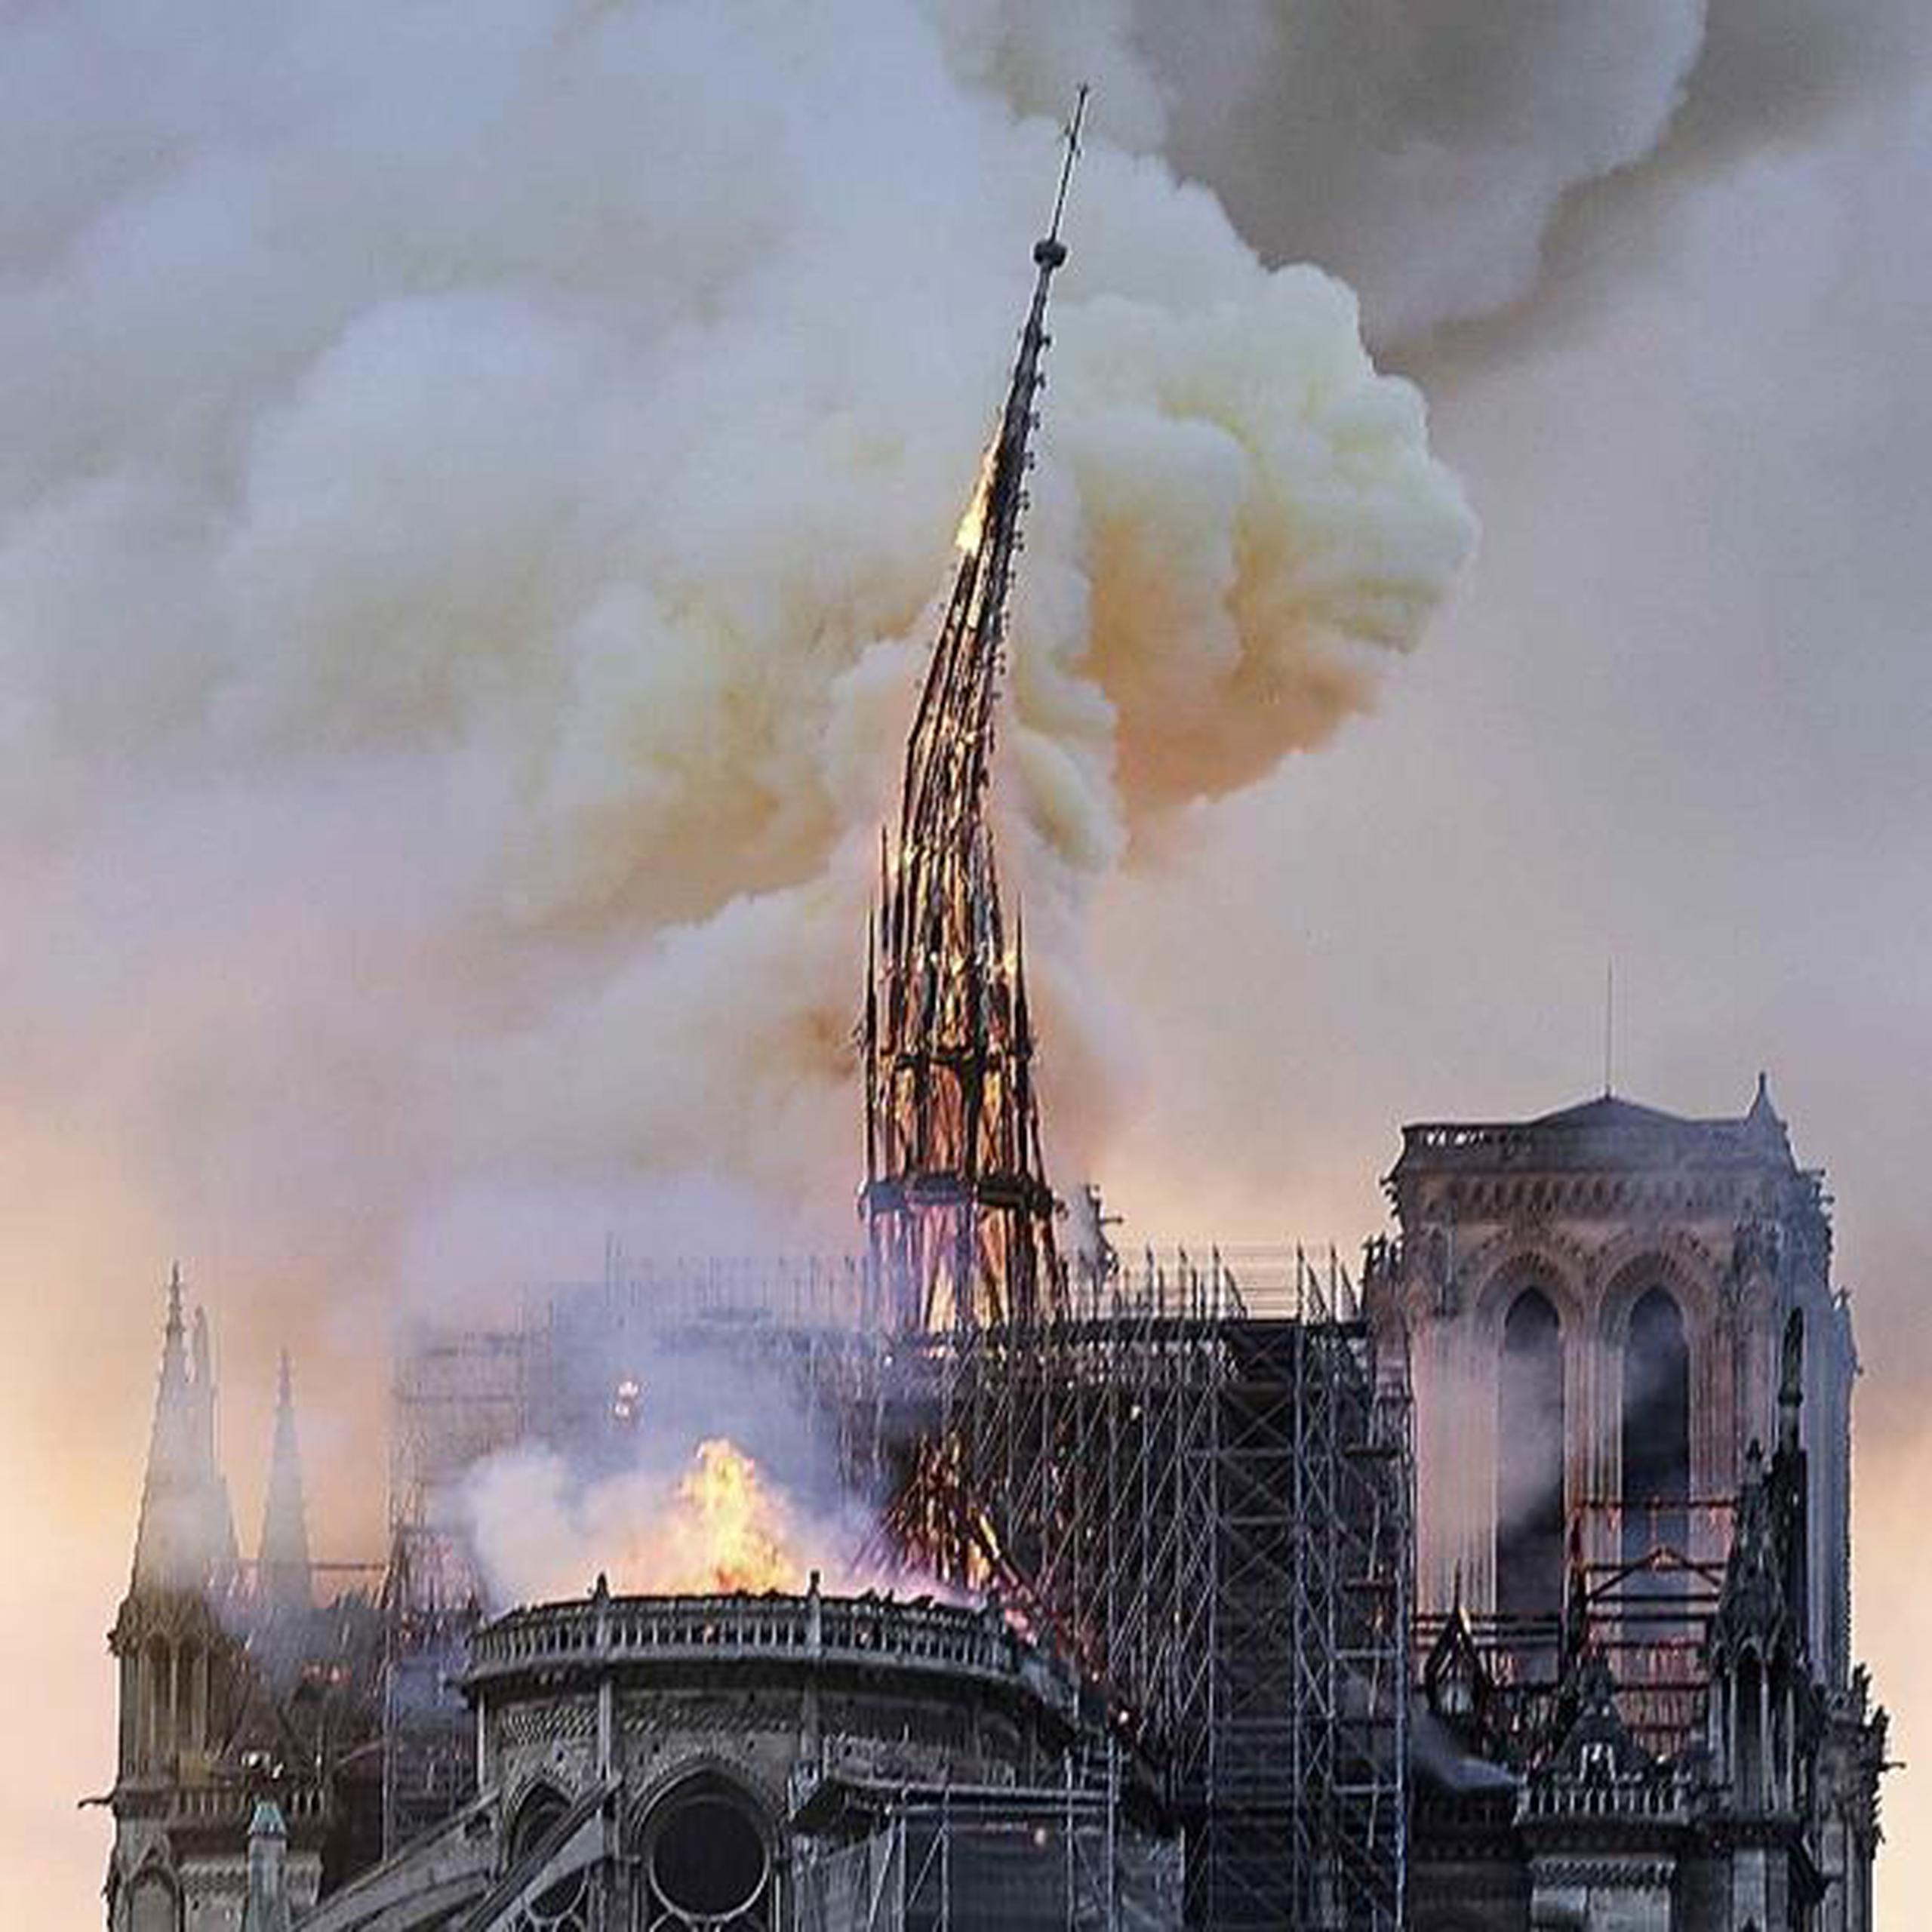 Masas de humo marrón amarillento llenaron el aire sobre la catedral de Notre Dame durante el siniestro. (AP / Diana Ayanna)